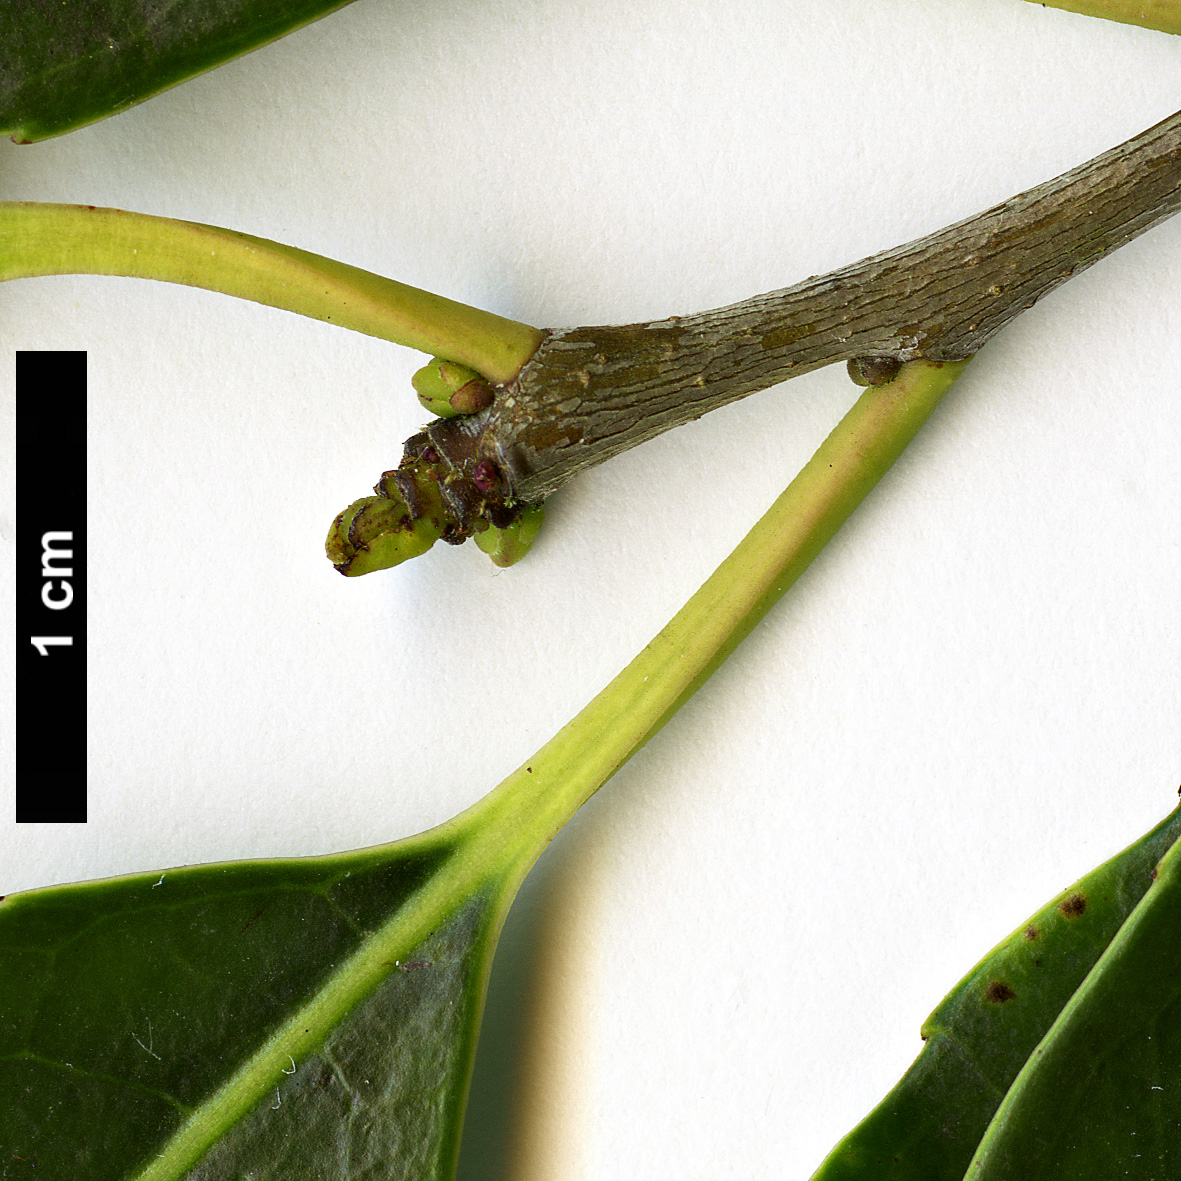 High resolution image: Family: Aquifoliaceae - Genus: Ilex - Taxon: purpurea